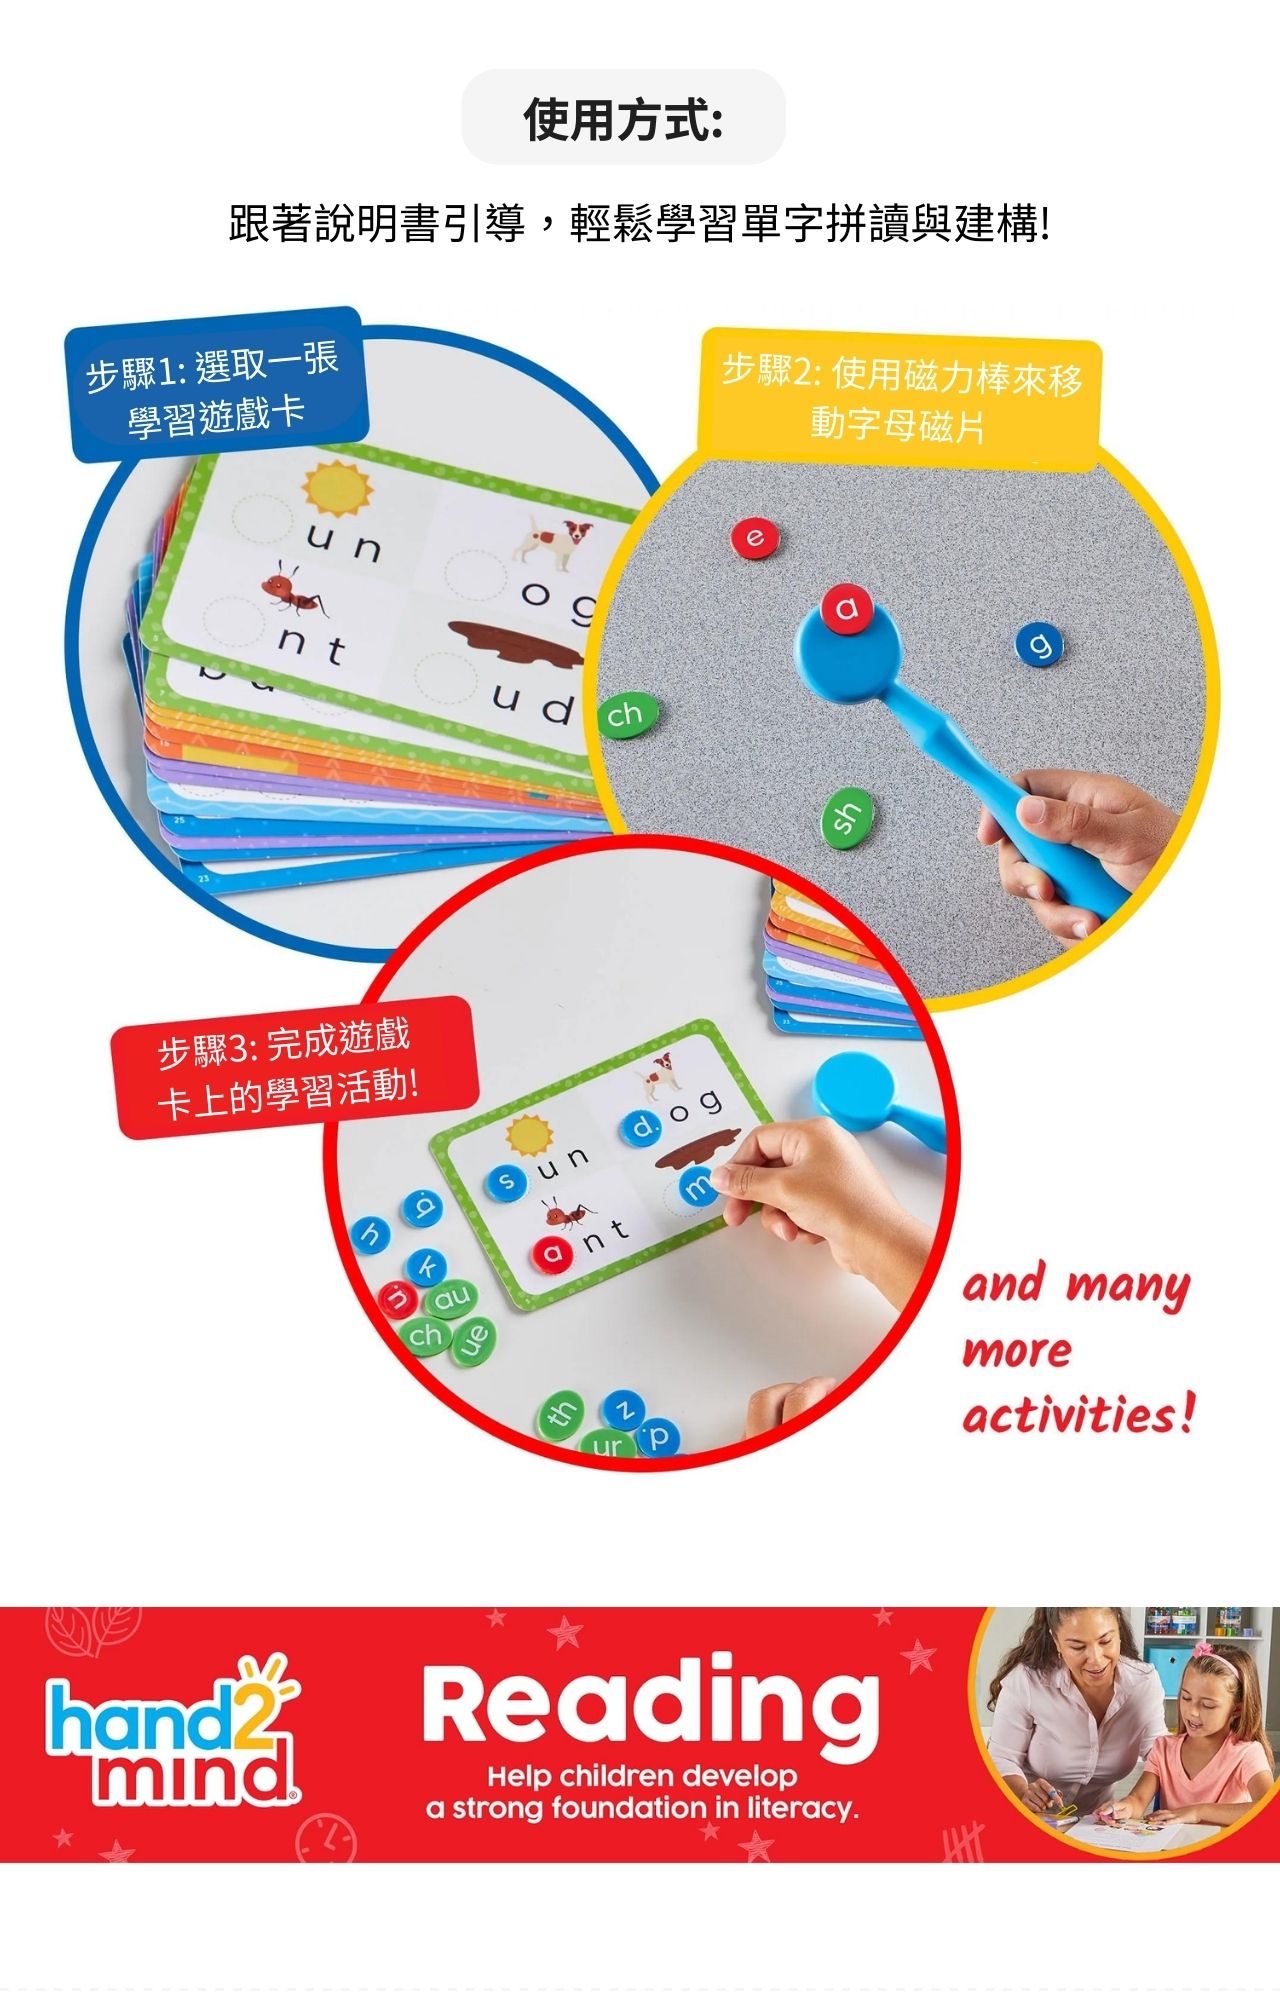 美國hand2mind 英文識字閱讀學習寶盒_產品說明 (4)